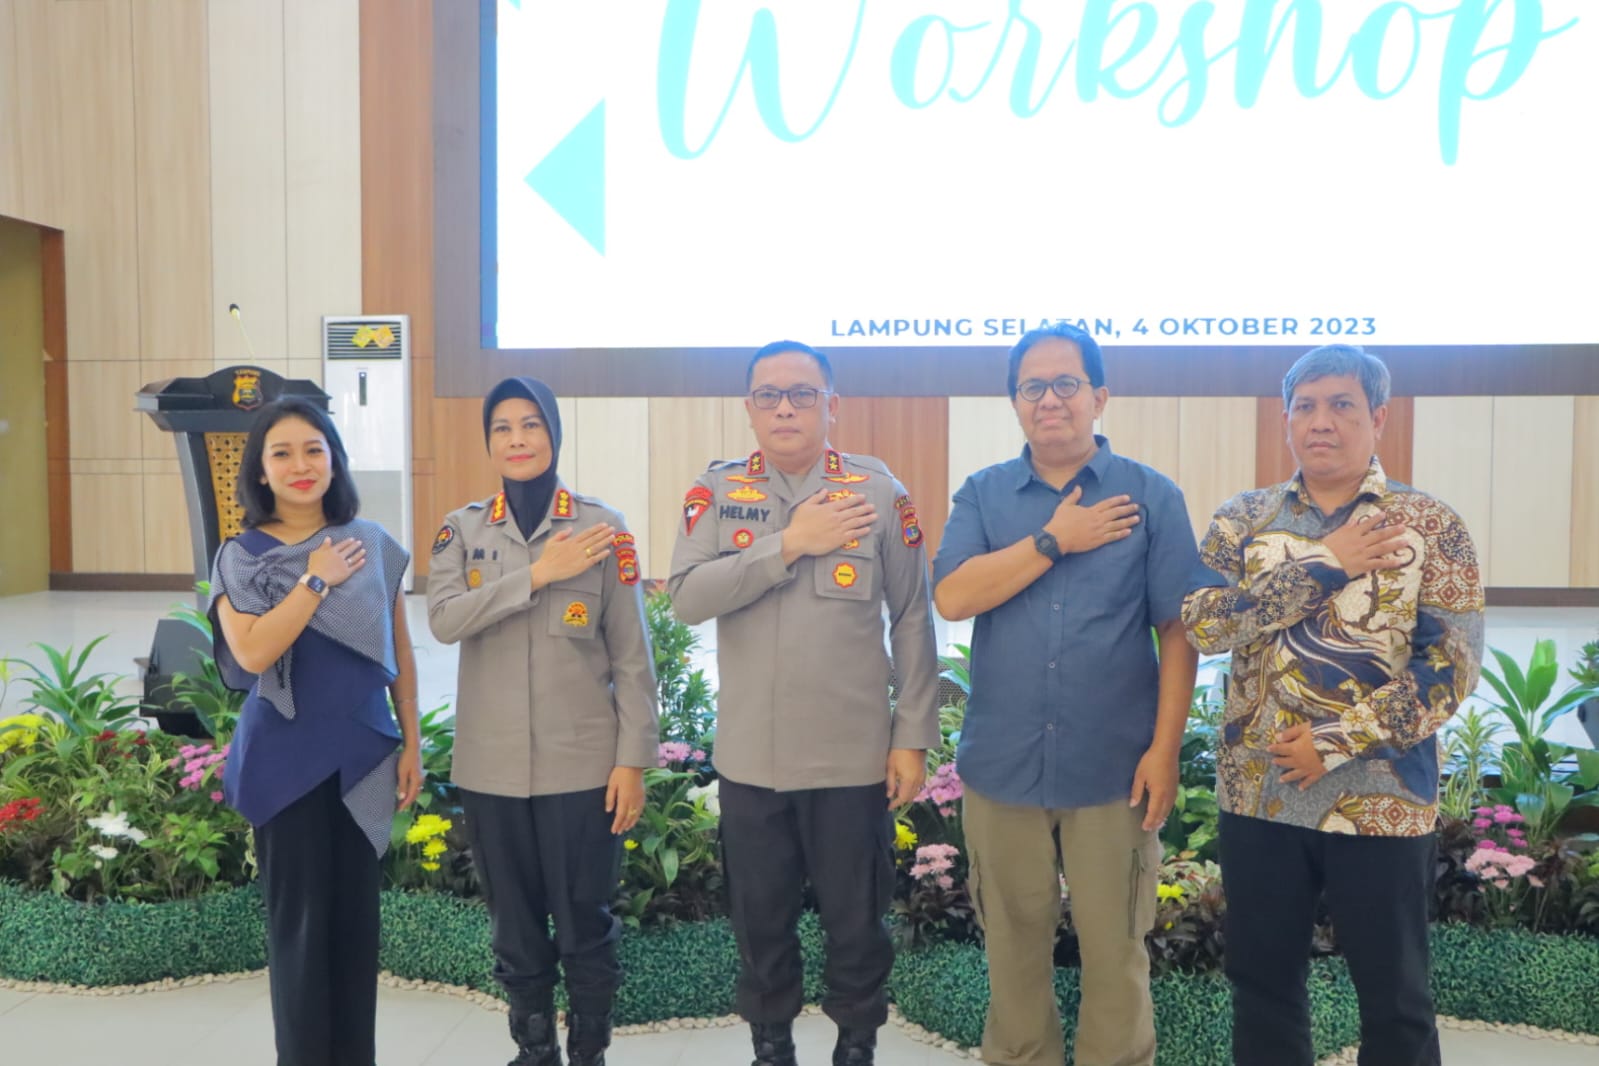 Tingkatkan Kemampuan Komunikasi Publik, Polda Lampung Laksanakan Workshop Public Speaking dan Smartphone Videography